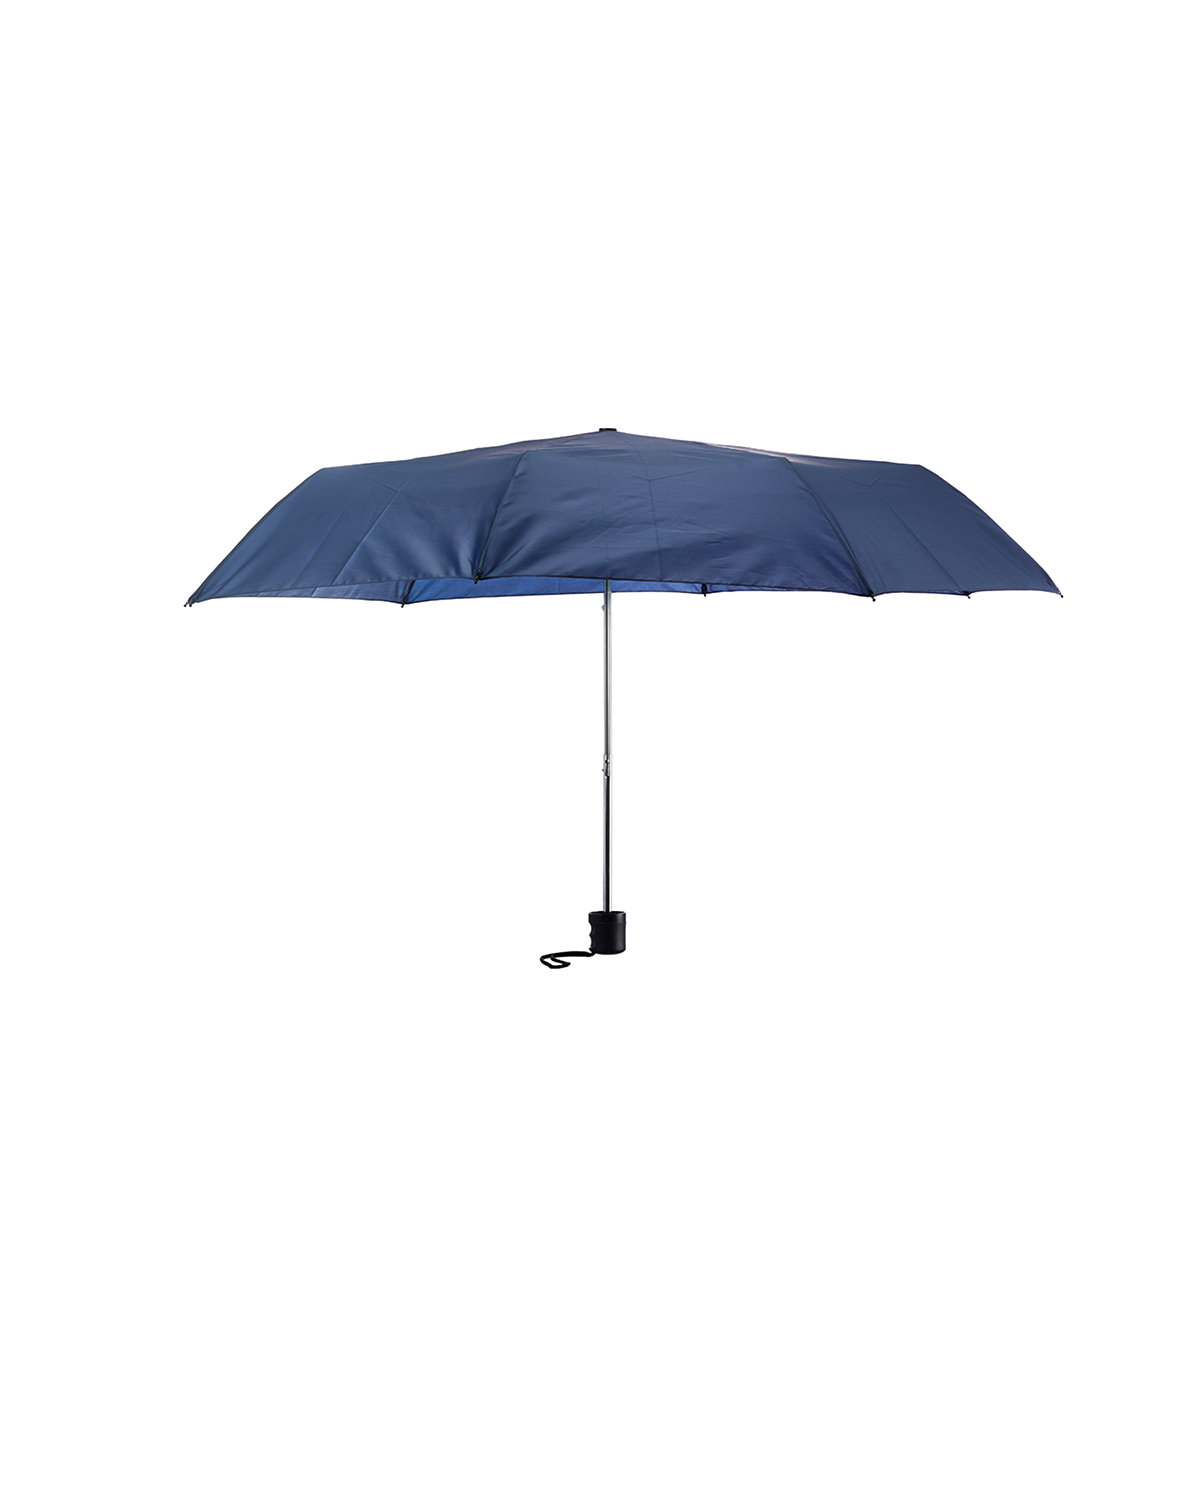 Prime Line Budget Folding Umbrella navy blue 